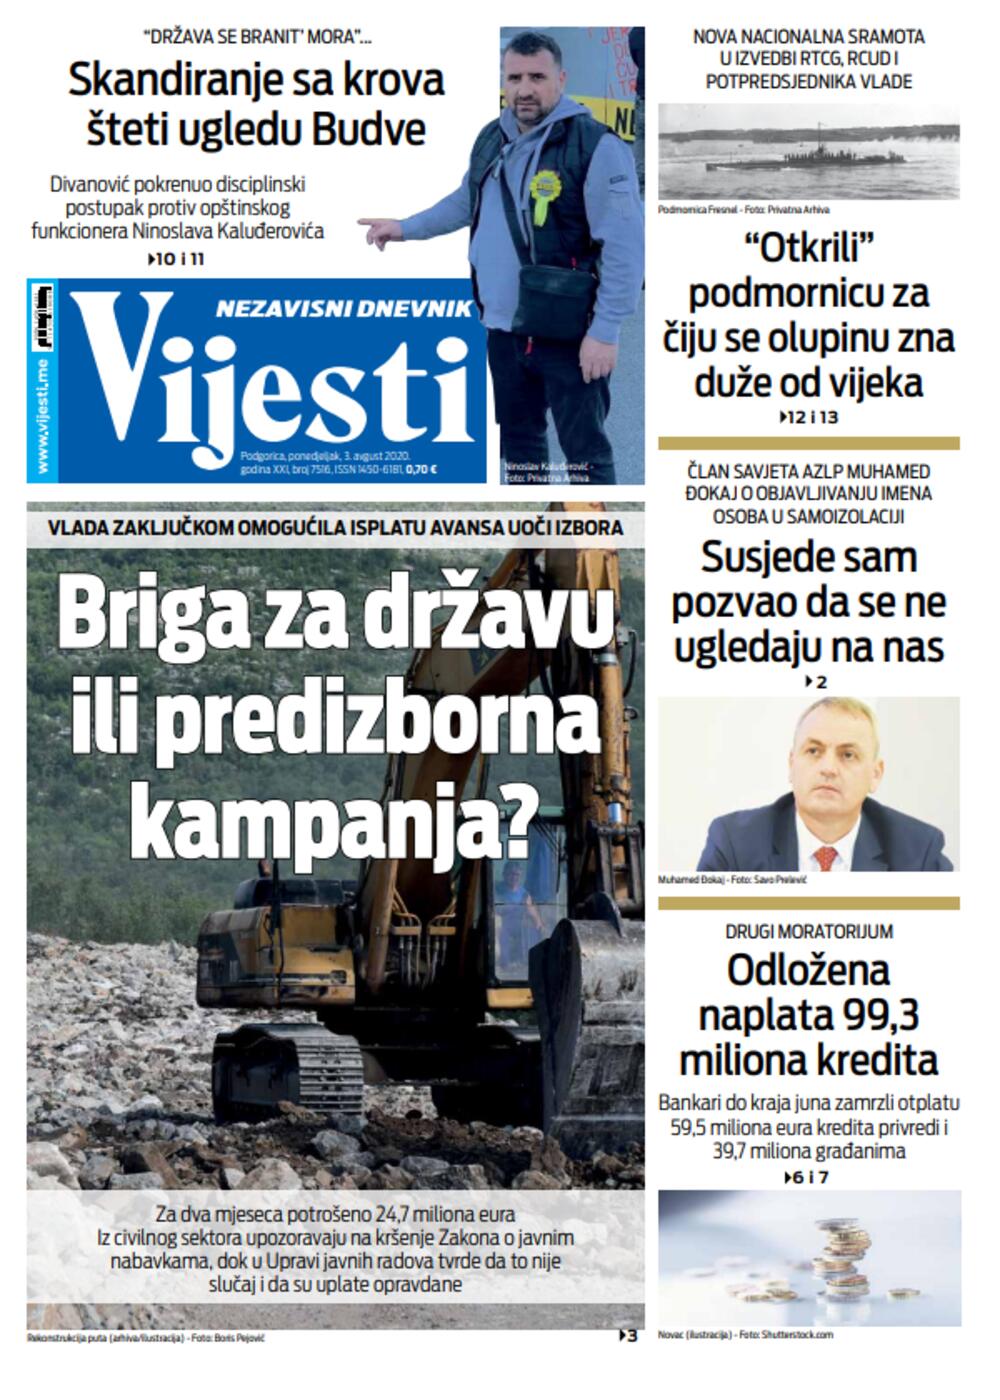 Naslovna strana "Vijesti"  3. avgust 2020., Foto: Vijesti